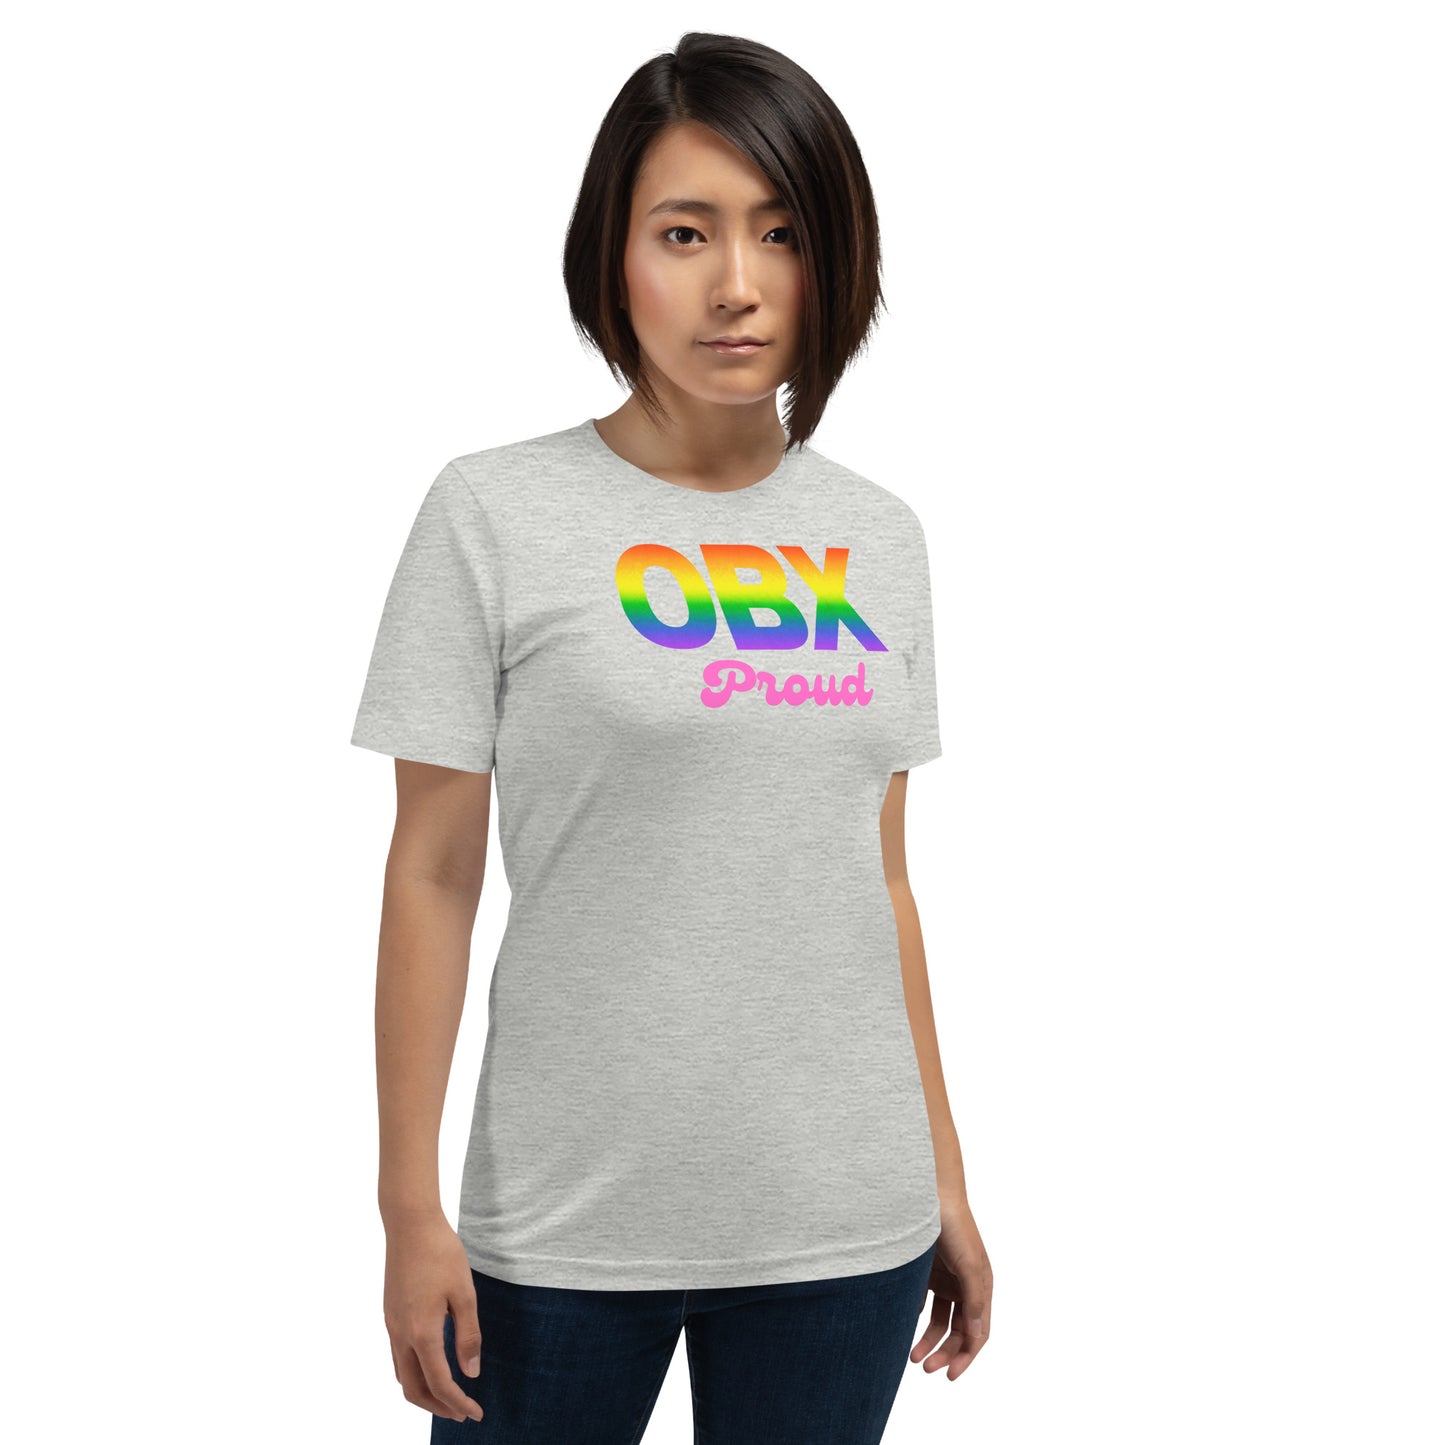 "OBX Proud" unisex t-shirt